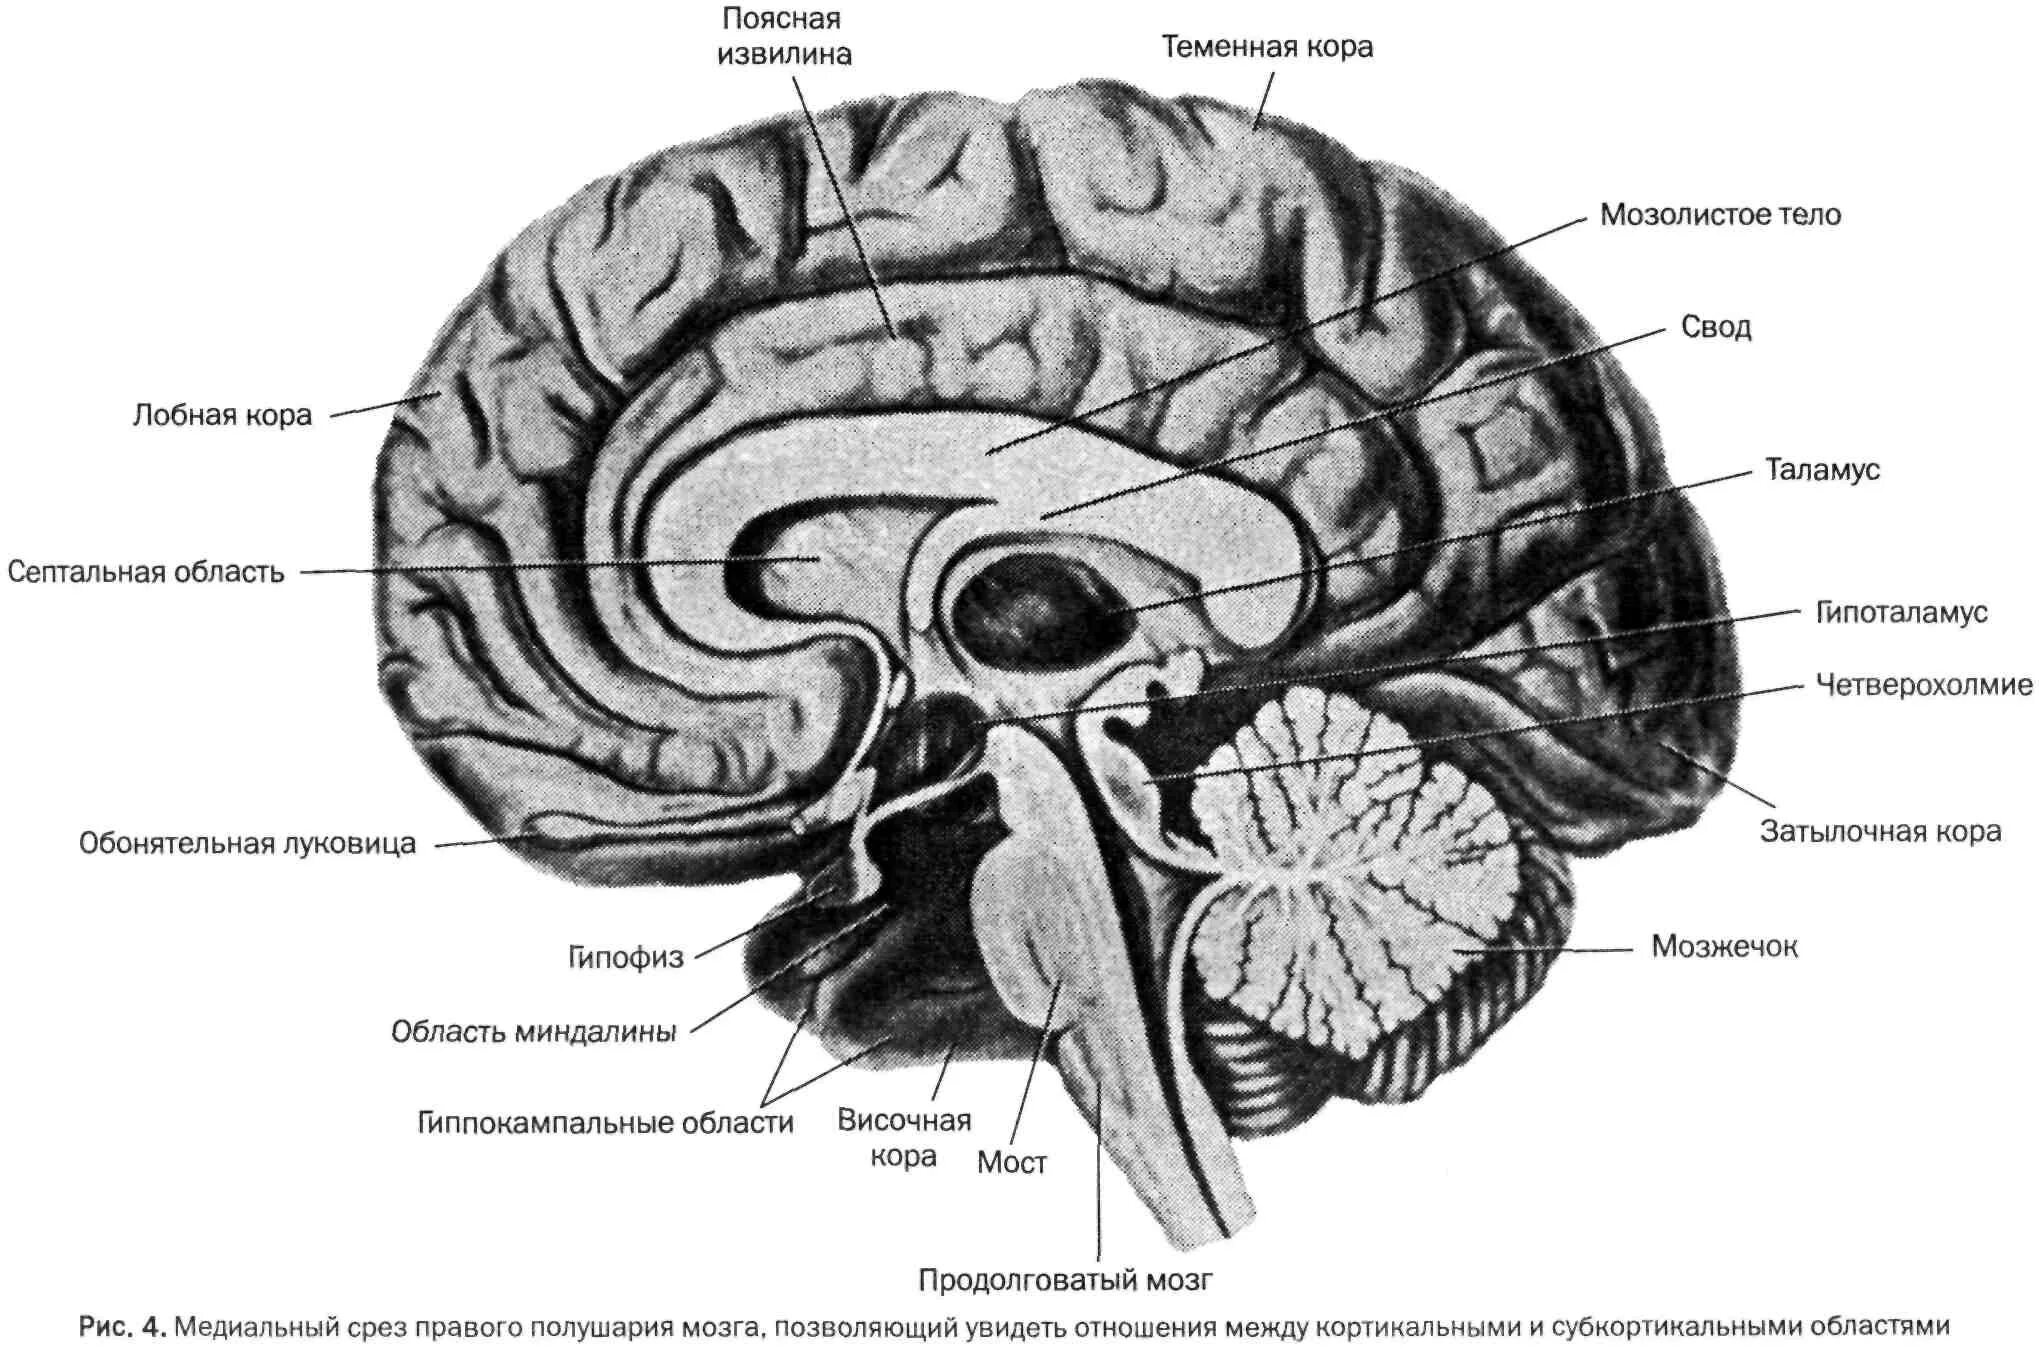 Большое полушарие мозолистое тело мост гипоталамус. Сагитальный разрез головного мозга. Сагиттальный разрез головного мозга (медиальная поверхность). Отделы головного мозга на сагиттальном срезе.